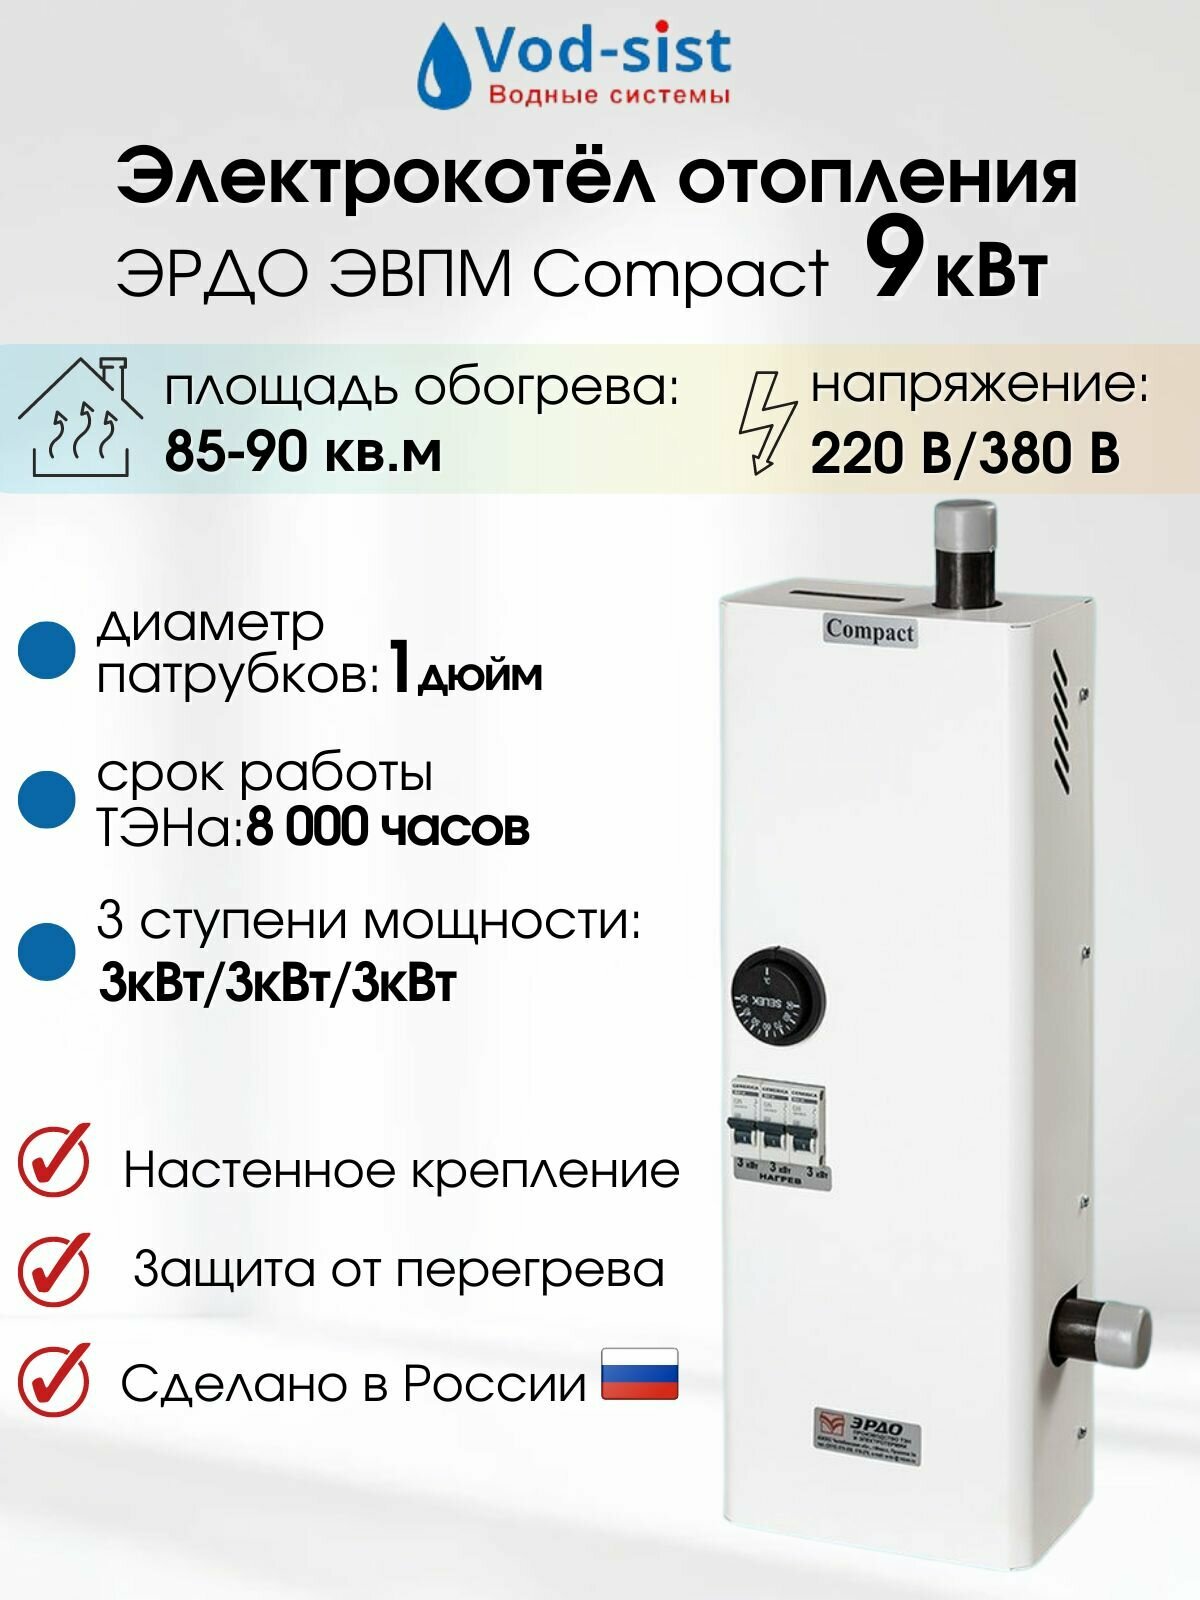 Электрокотел эрдо ЭВПМ Compact 9 кВт